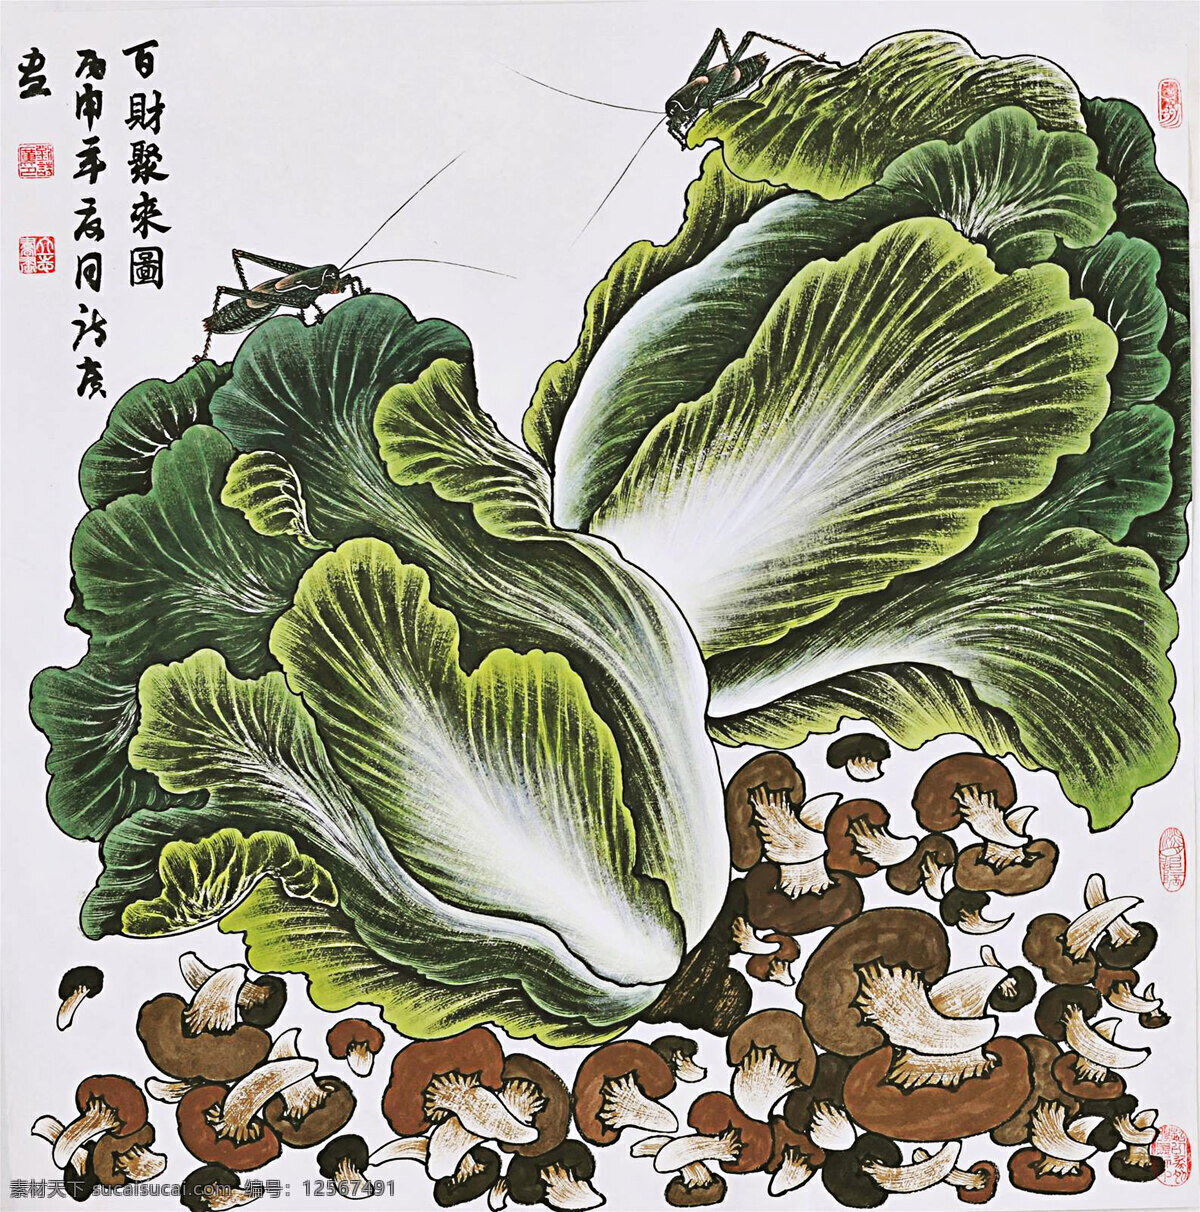 国画白菜 国画 水墨 白菜 花卉 植物 文化艺术 绘画书法